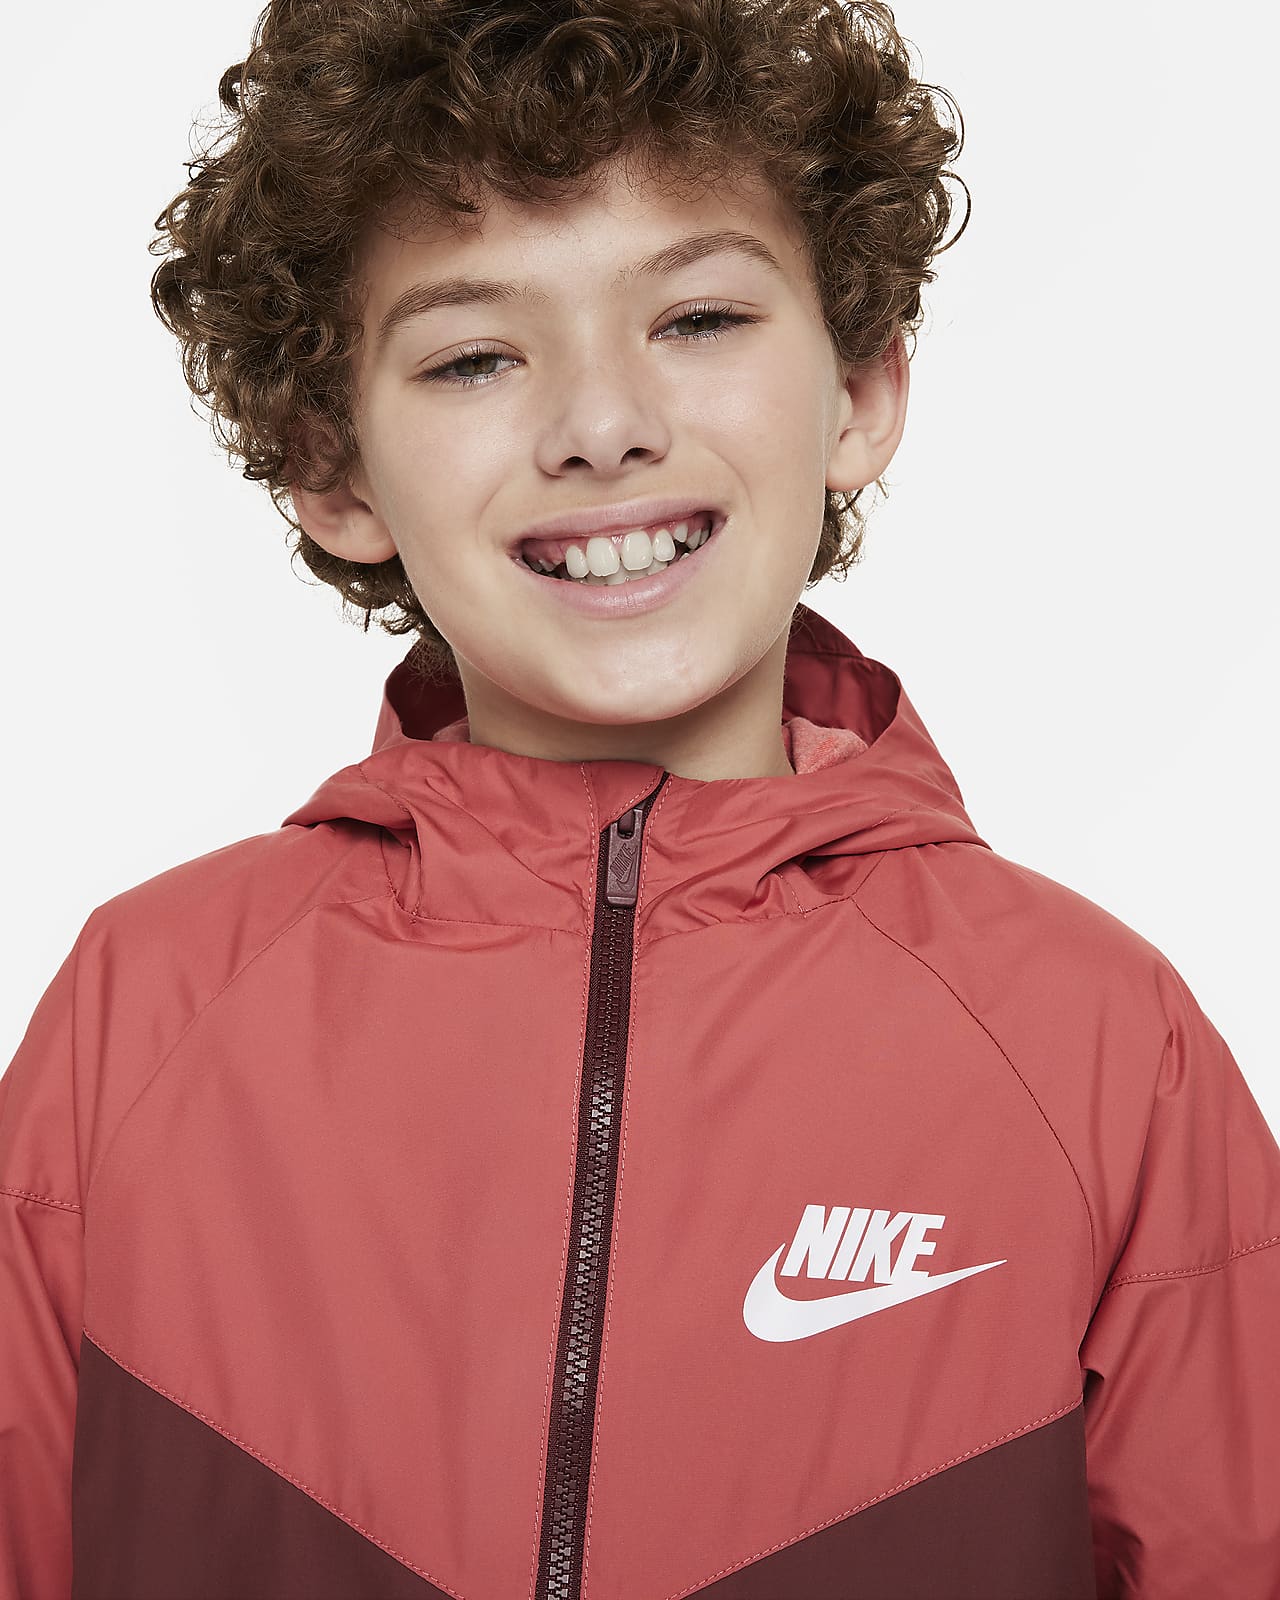 Nike Sportswear Windrunner Big Kids' Hooded Jacket.